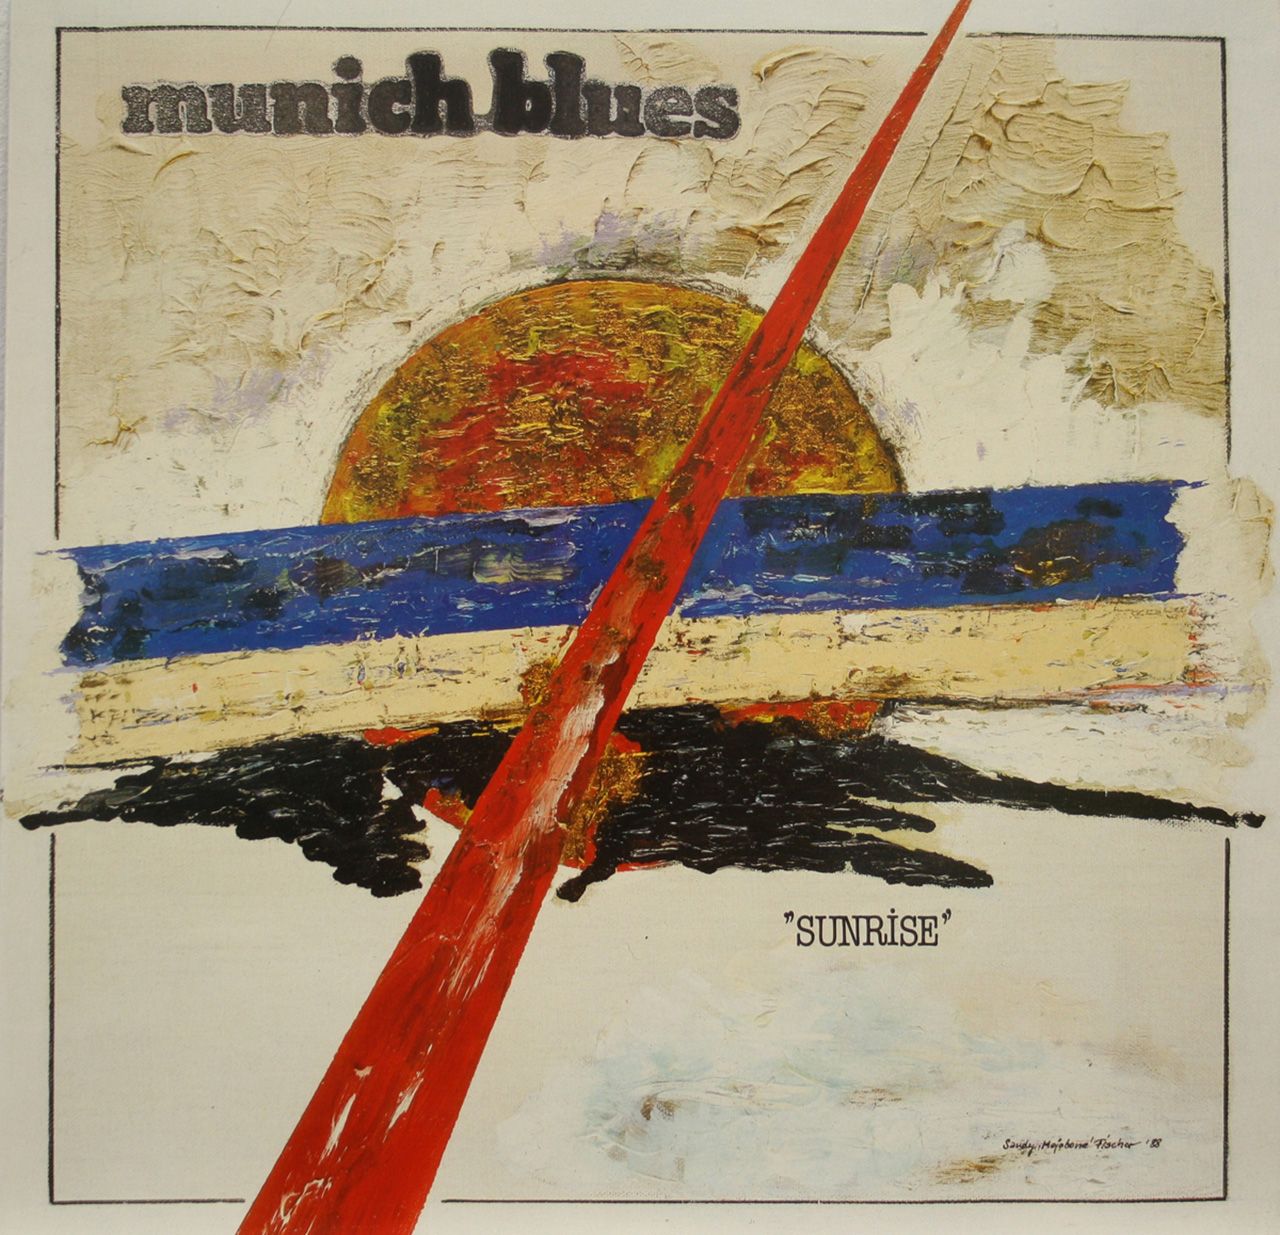 Feierwrerk_Blog_Munich_Blues_LP_Sunrise_1988_ Frontseite_(c)Sandy_Fischer